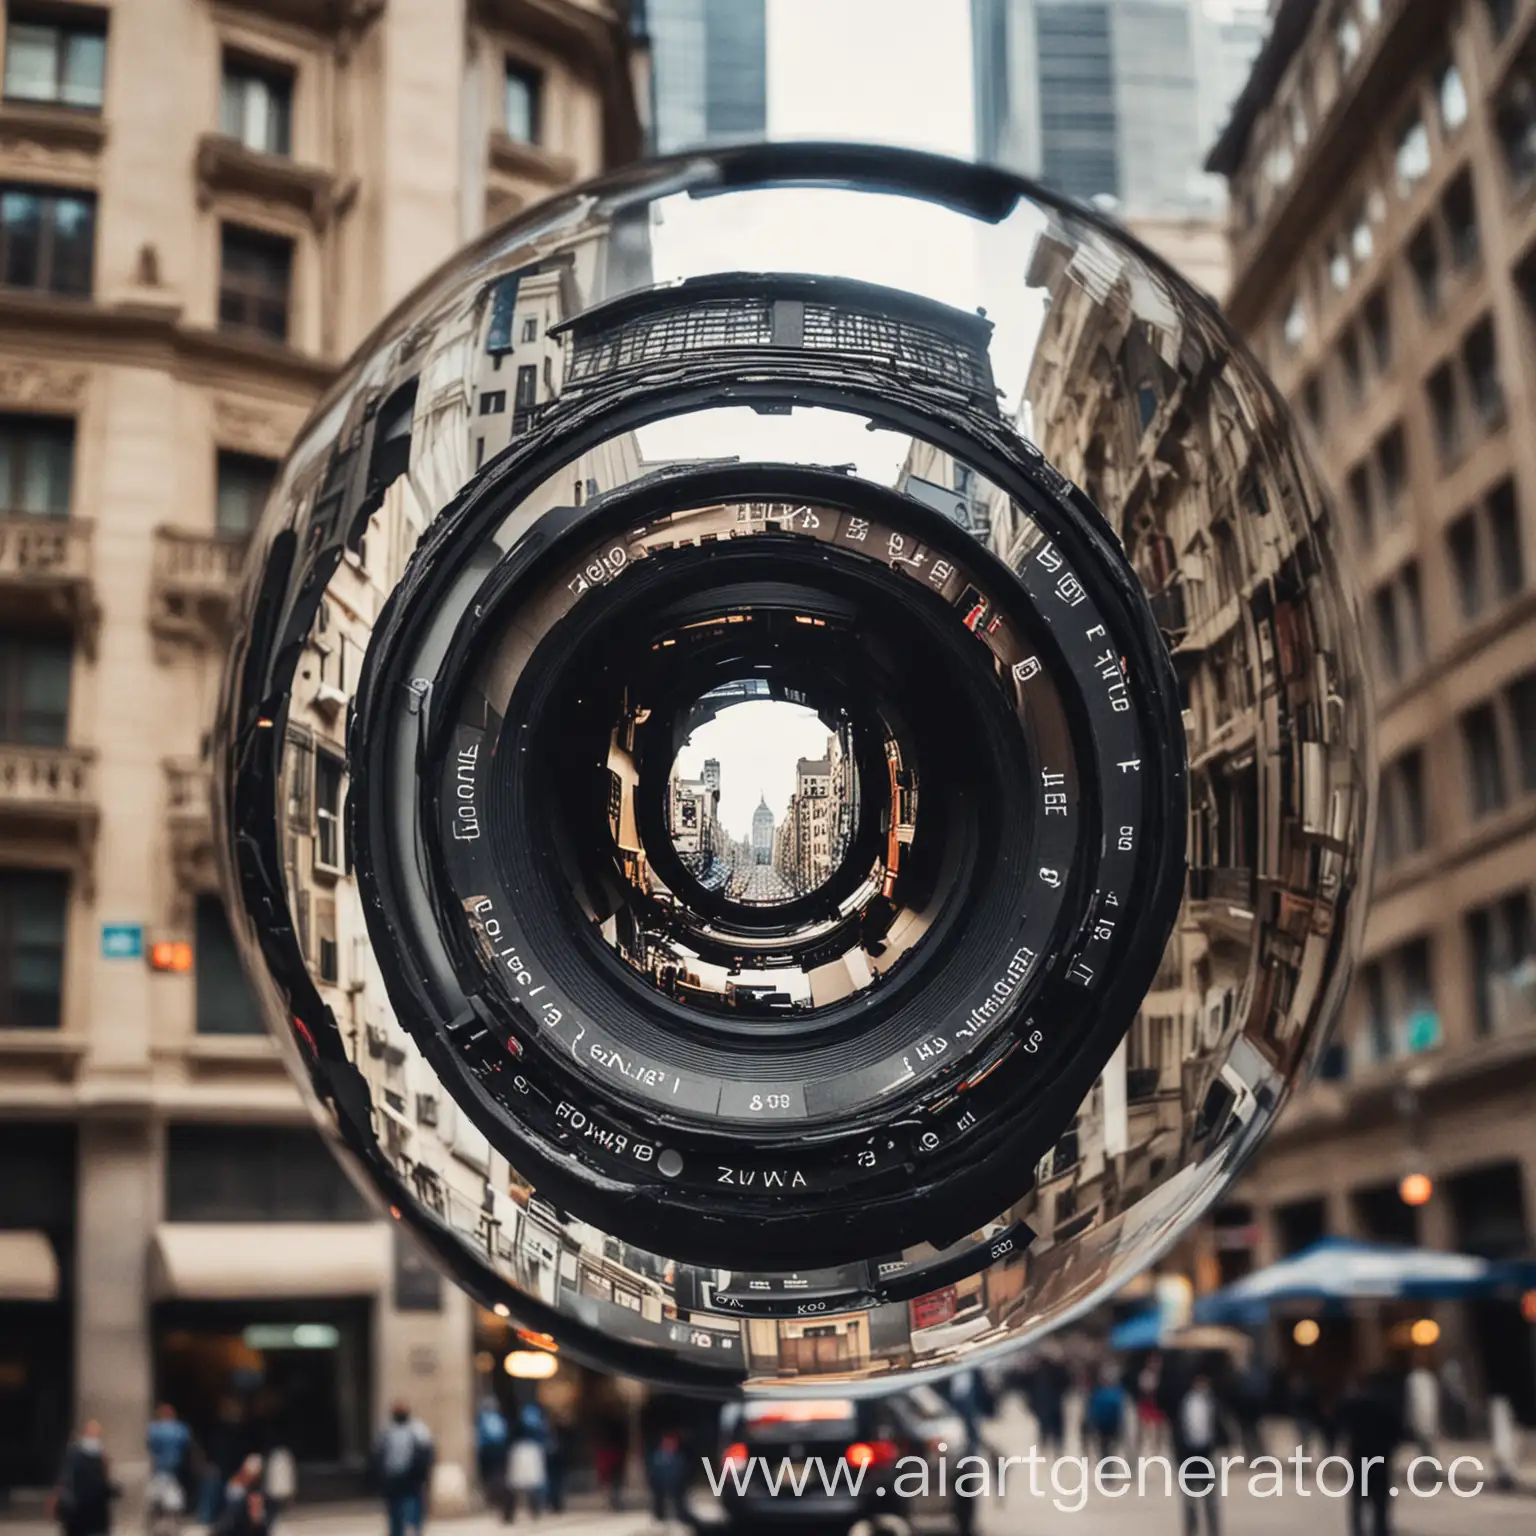 Urban-Architecture-Captured-Through-Camera-Lens